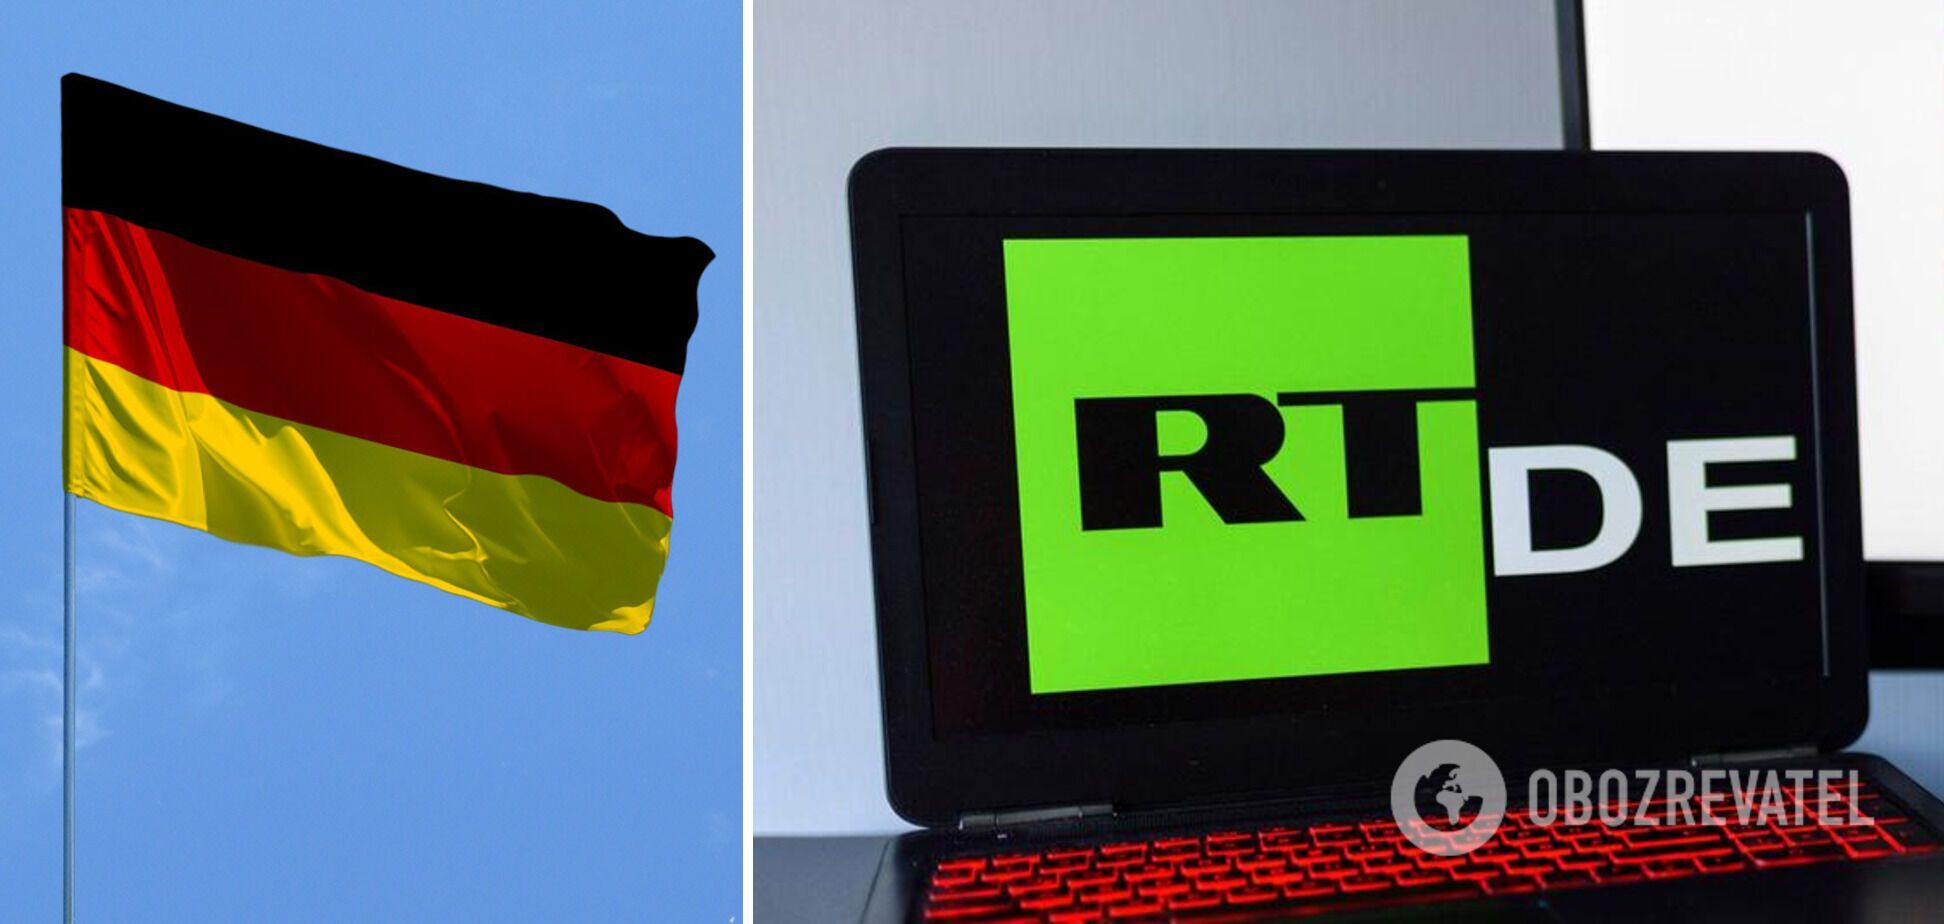 Телеканал RT DE припинив свою діяльність у Німеччині